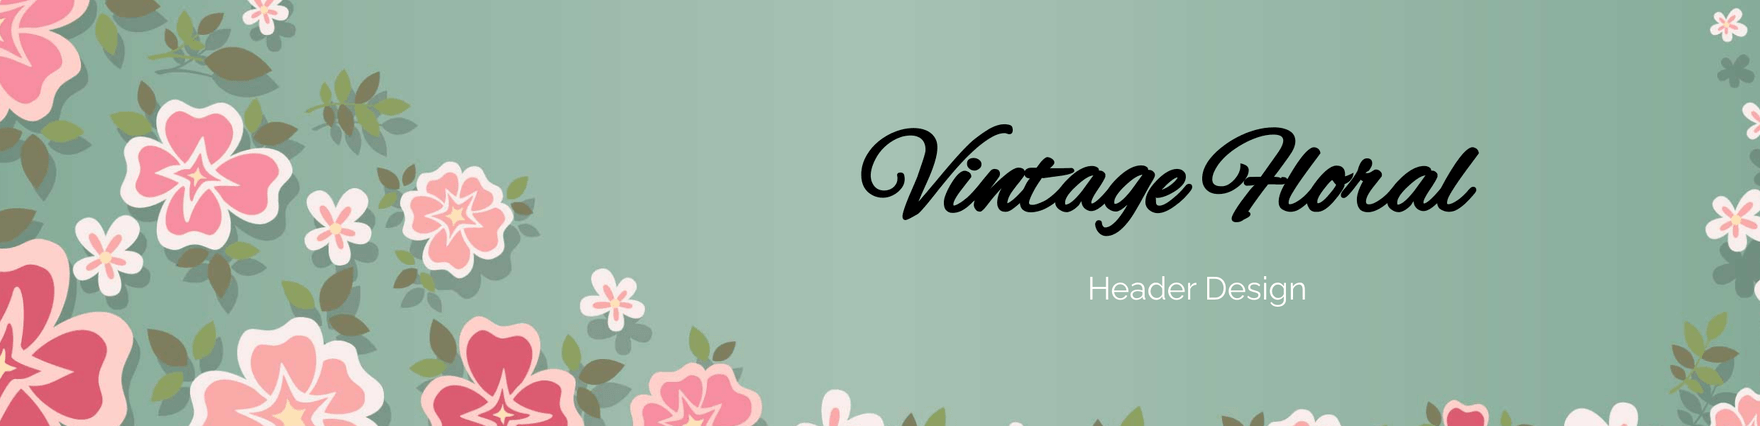 Vintage Floral Header Design Template